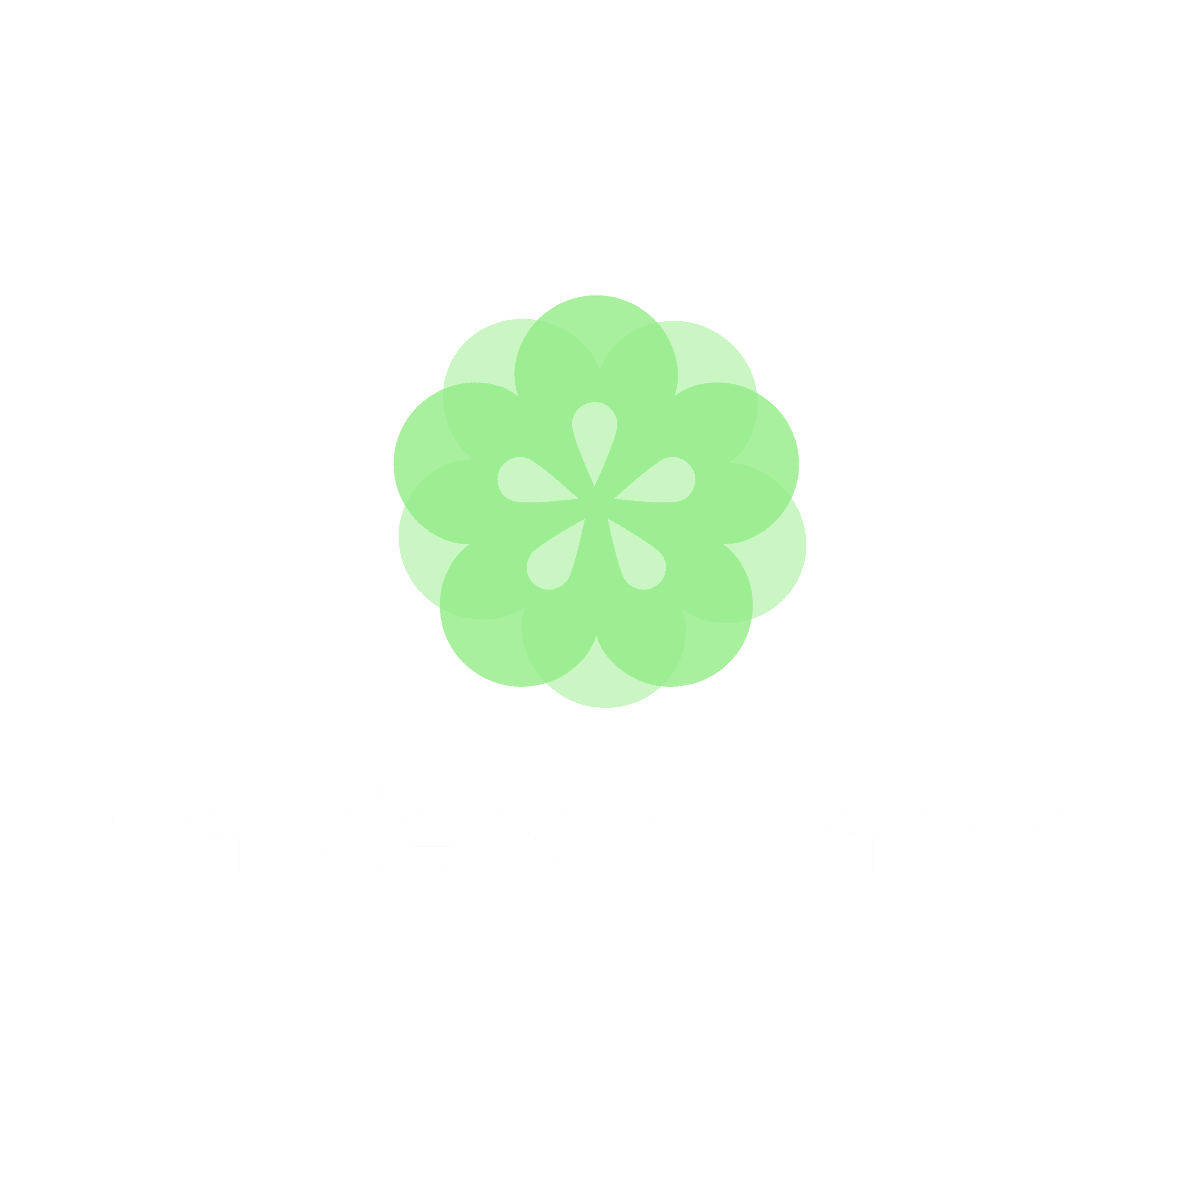 GardenofPlants